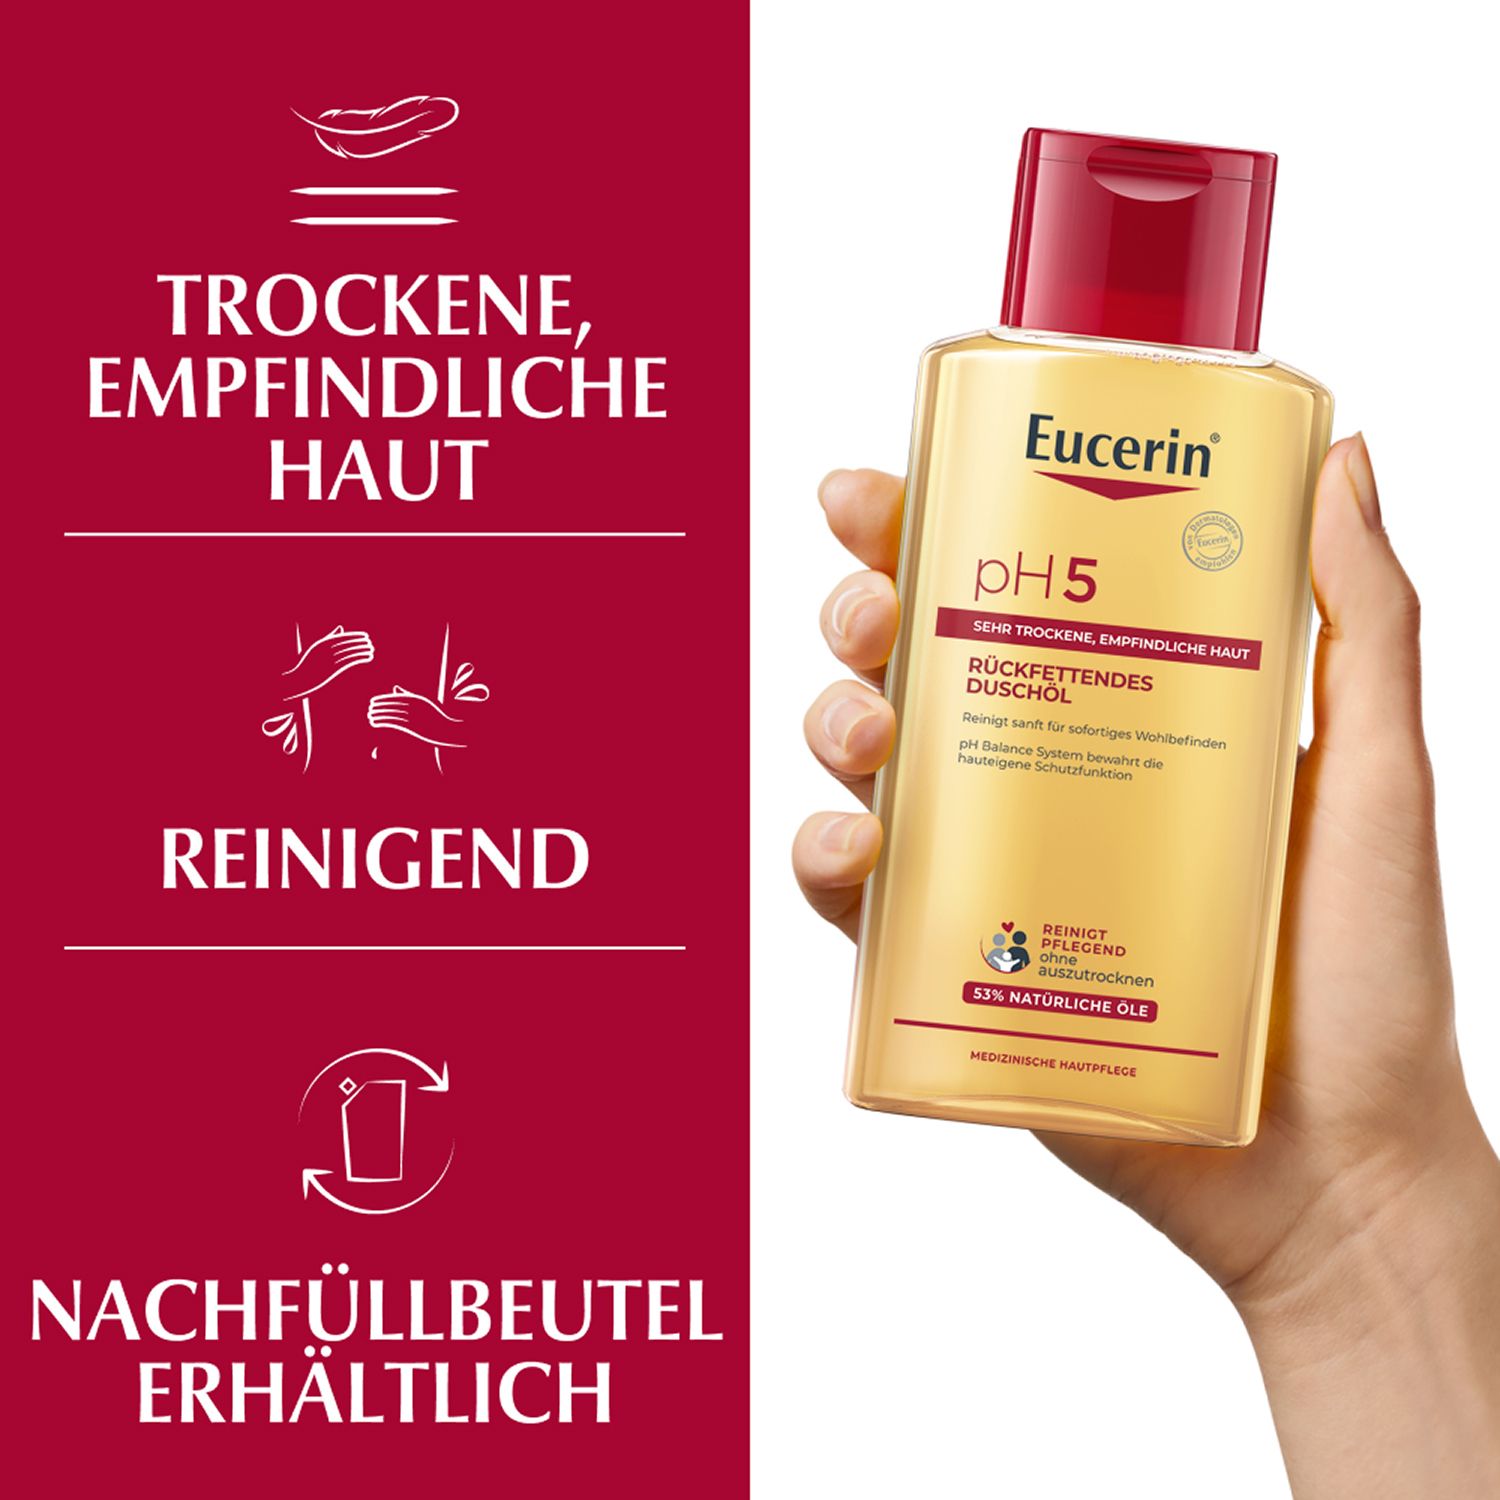 Eucerin® pH5 Duschöl – Rückfettende Reinigung für trockene, strapazierte Haut mit natürlichen Pflegeölen